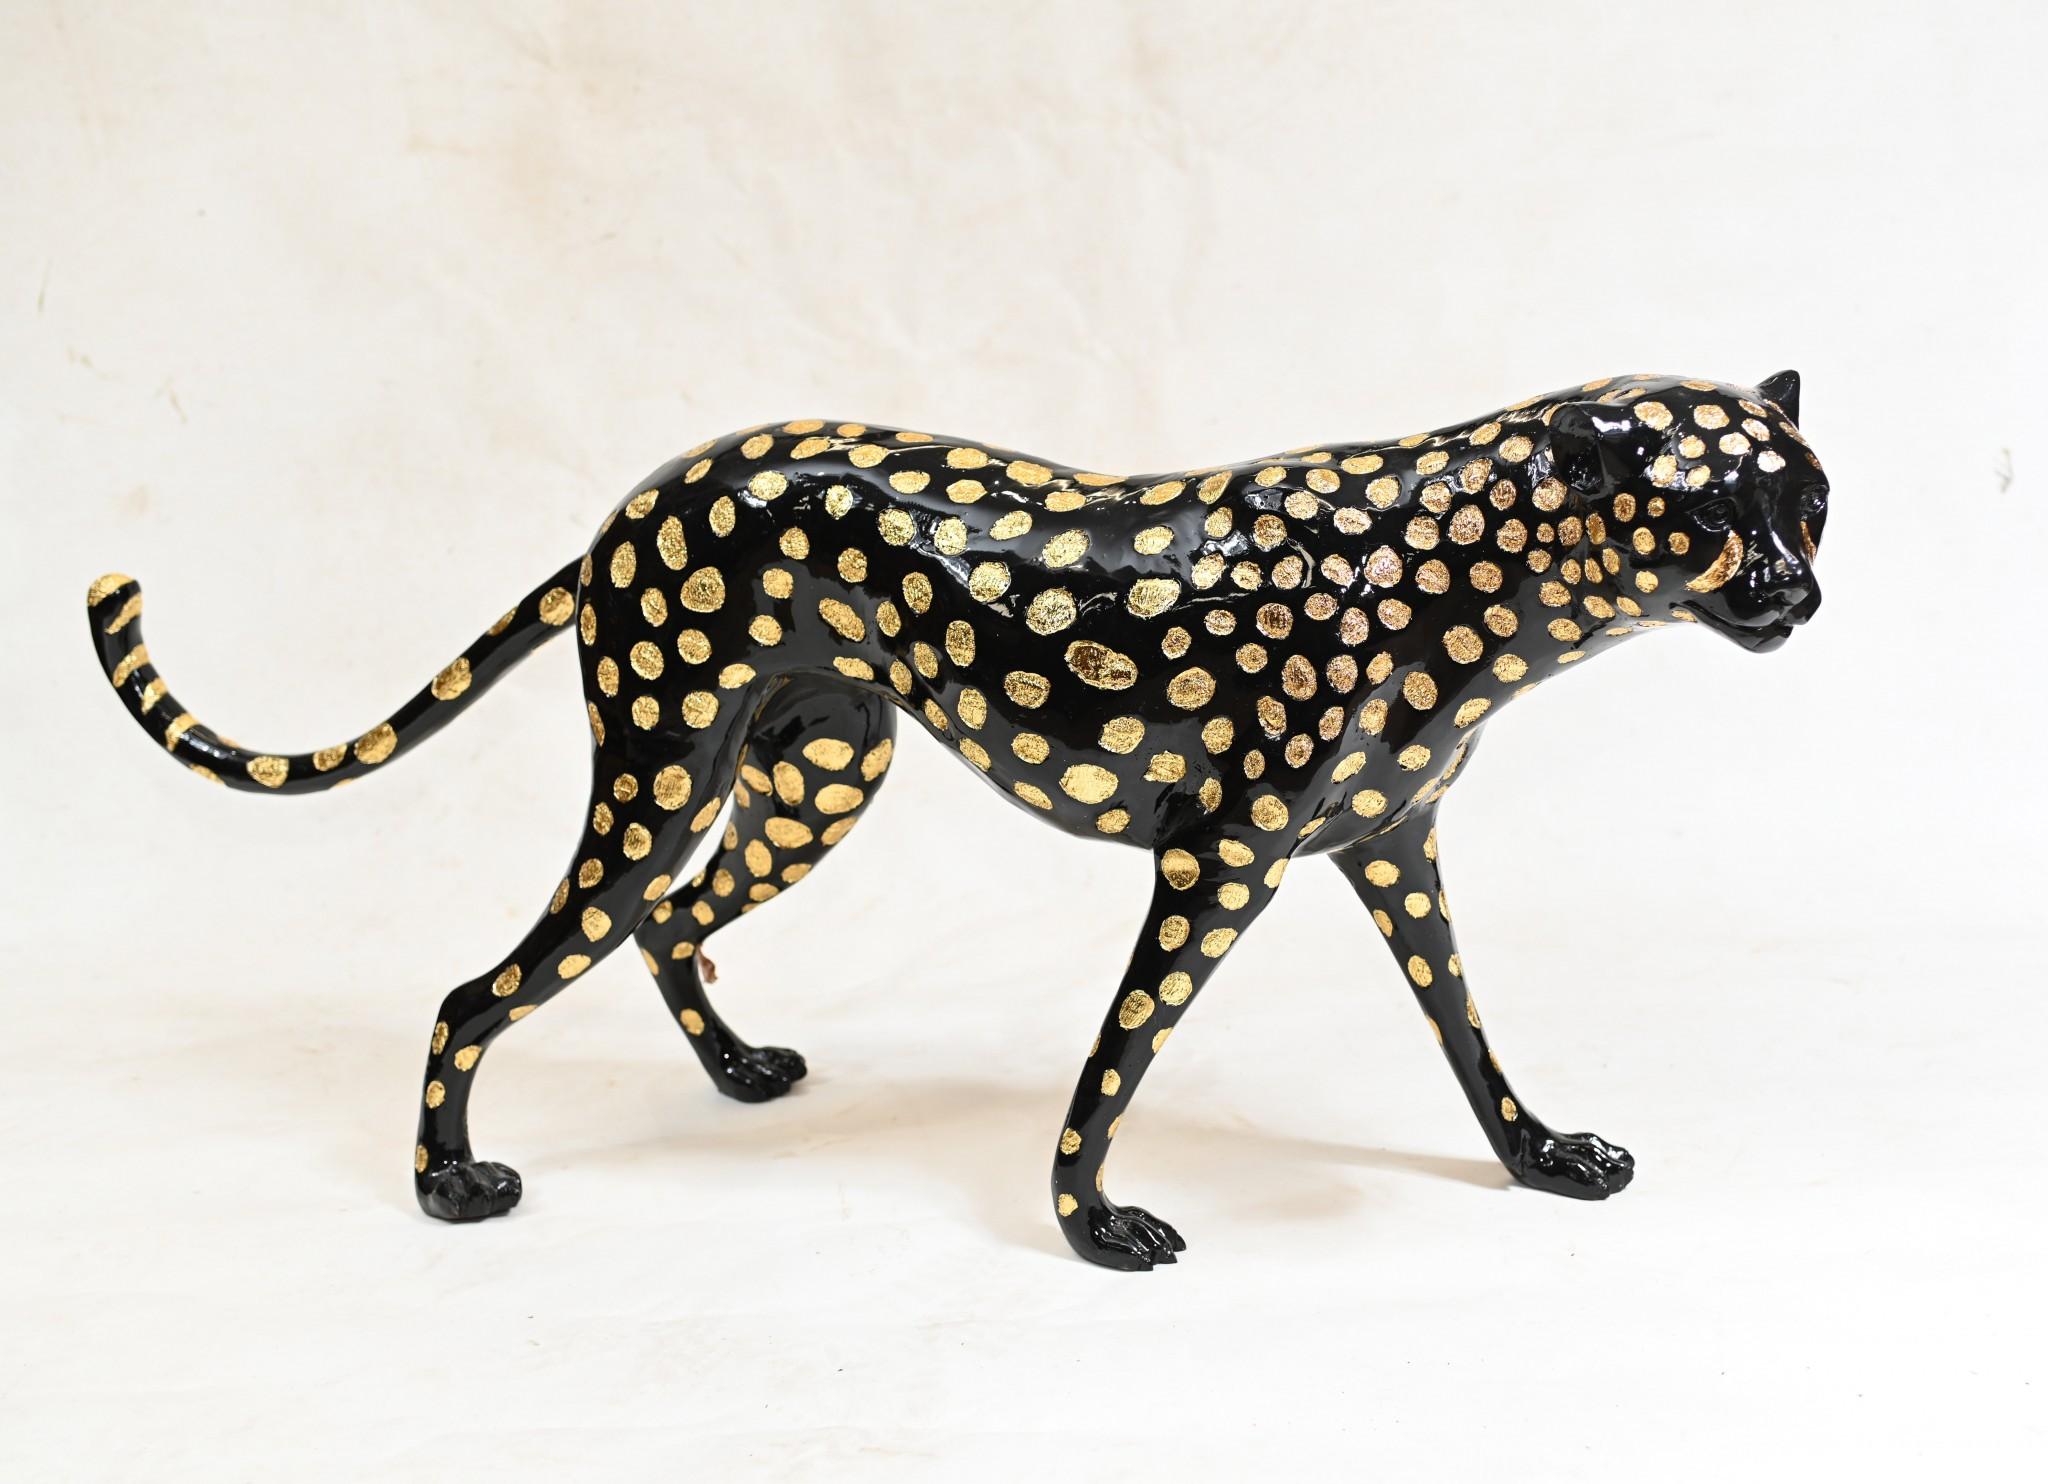 Wunderschöner Bronzeguss eines großen schwarzen Leoparden im Art-déco-Stil
Gute Größe mit einer Länge von fast einem Meter
Das Casting ist großartig, sieh dir an, wie die Flecken der Kreaturen in Schwarz wiedergegeben wurden.
Der Künstler hat